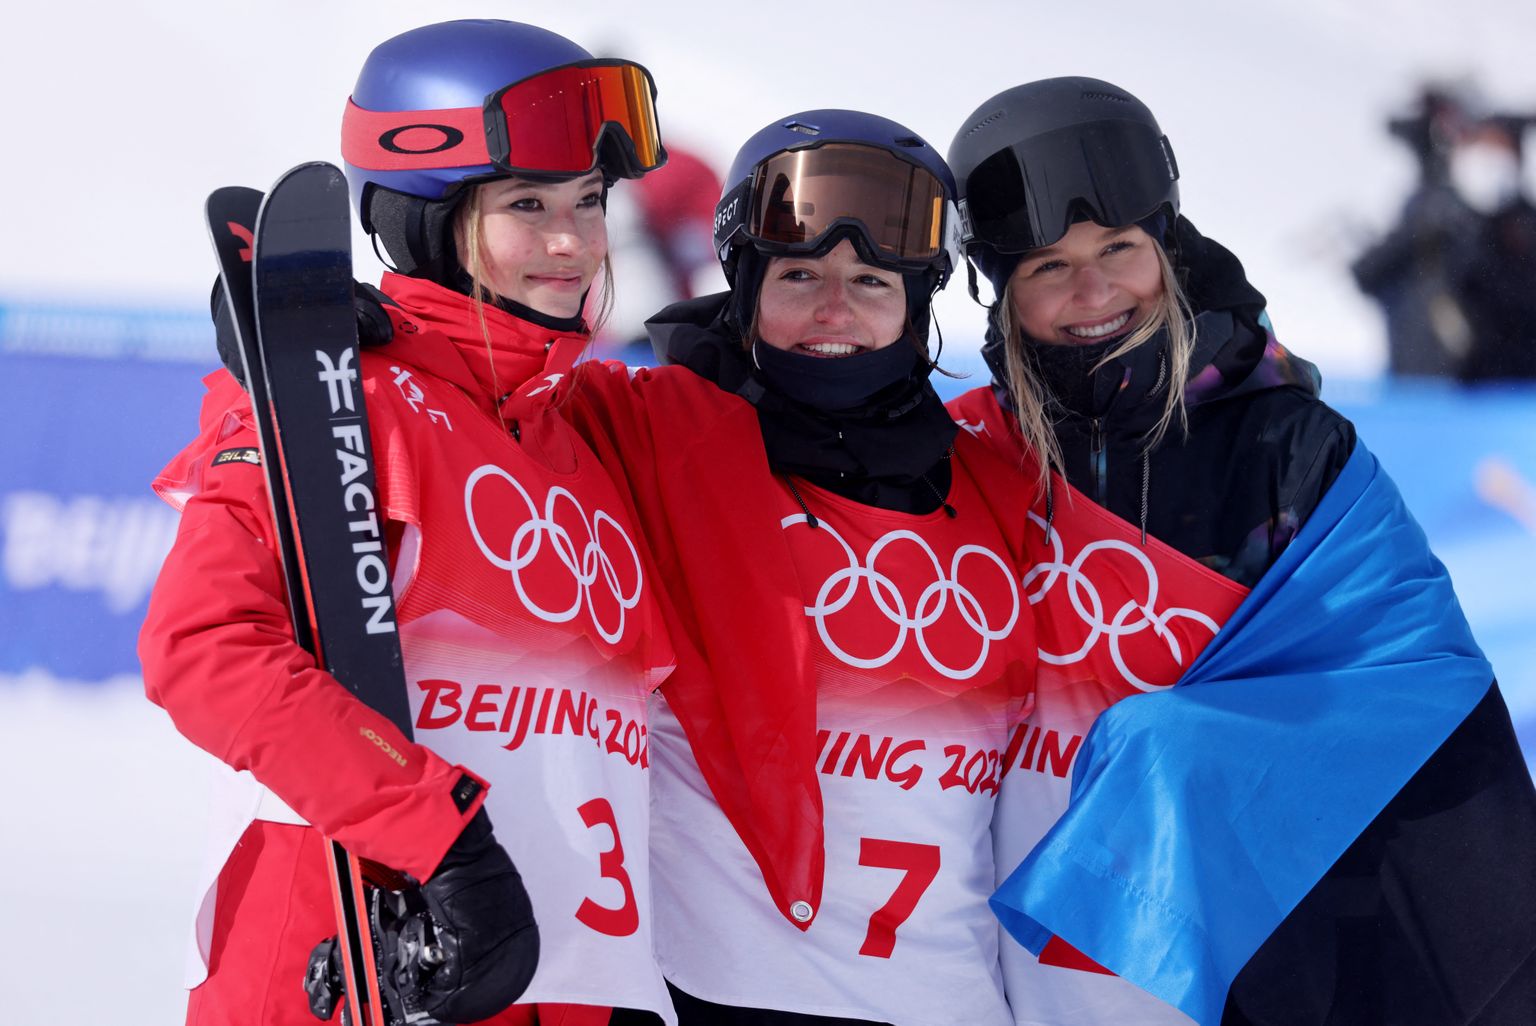 Kelly Sildaru (kõige paremal) kange konkurent Eileen Gu (kõige vasemal) on maailma üks enimteenivamaid naissportlasi.